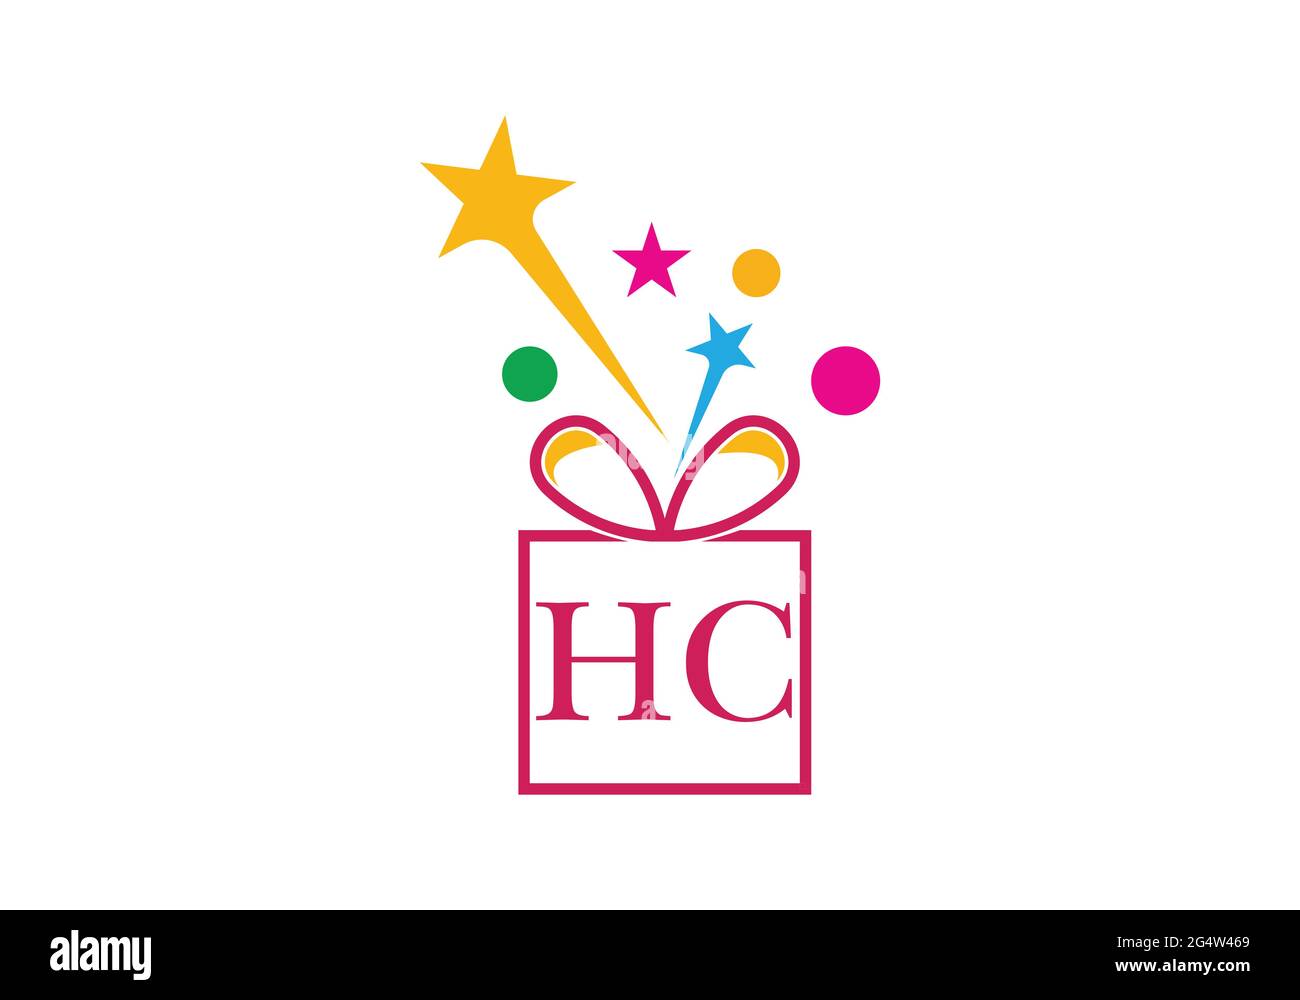 Geschenkbox, Geschenkboutique Buchstaben Alphabet H C Logo Symbol in Gold oder goldene Farbe für Luxus-Markendesign für Unternehmen und Unternehmen Stock Vektor